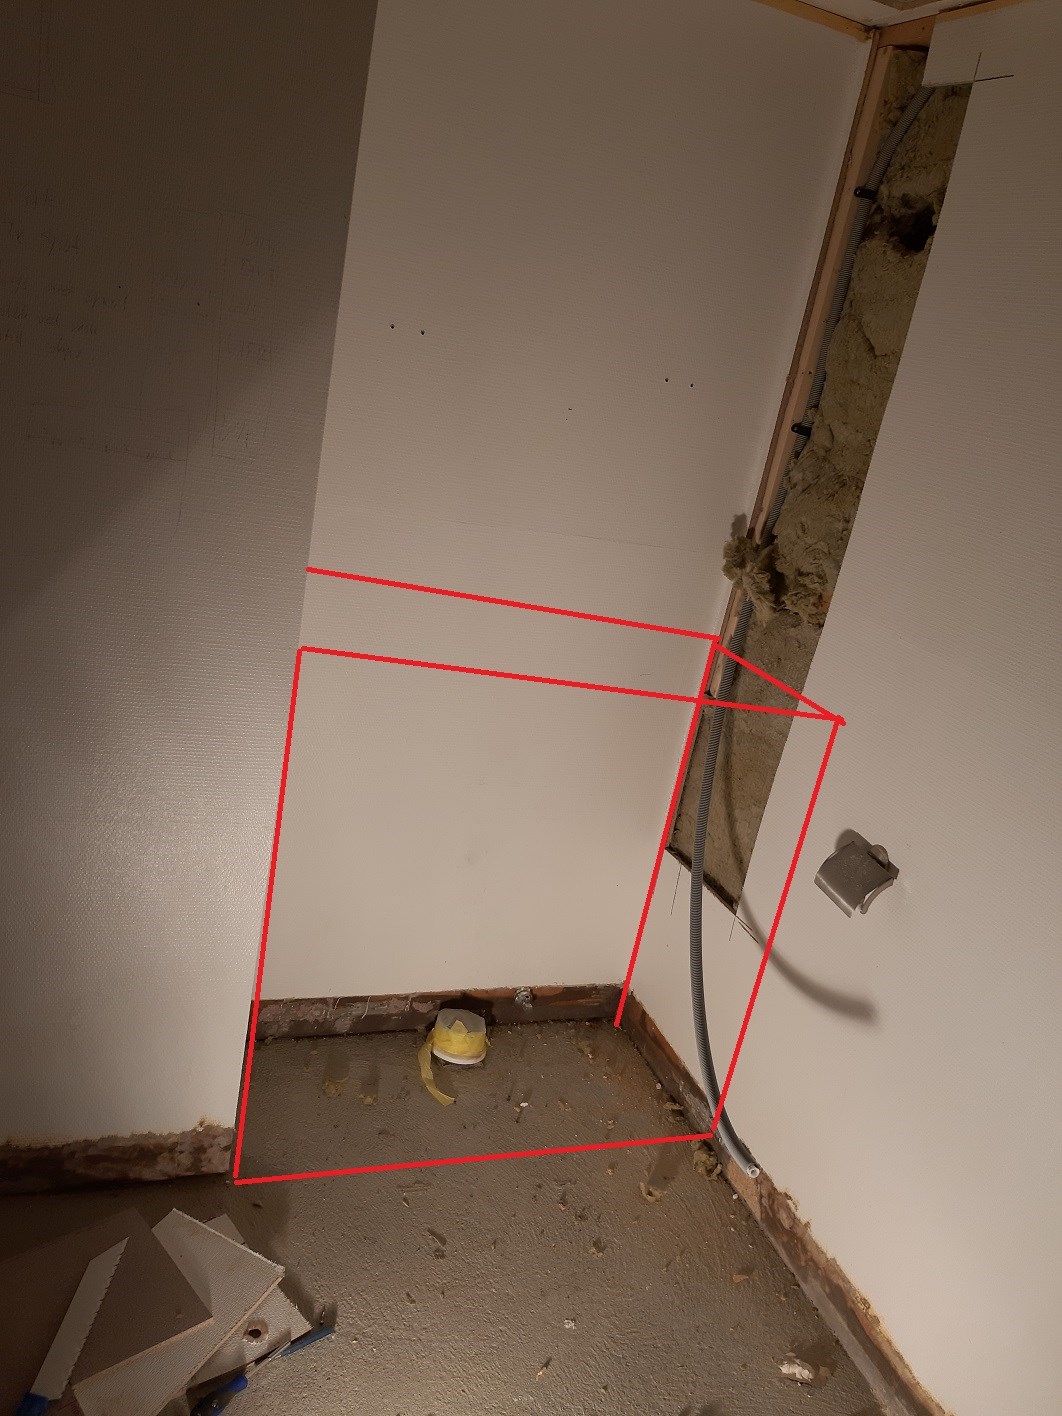 Varmekalel under "kasett" for vegghengt toalett, krise? - 20190402_125321 edit.jpg - eehgil